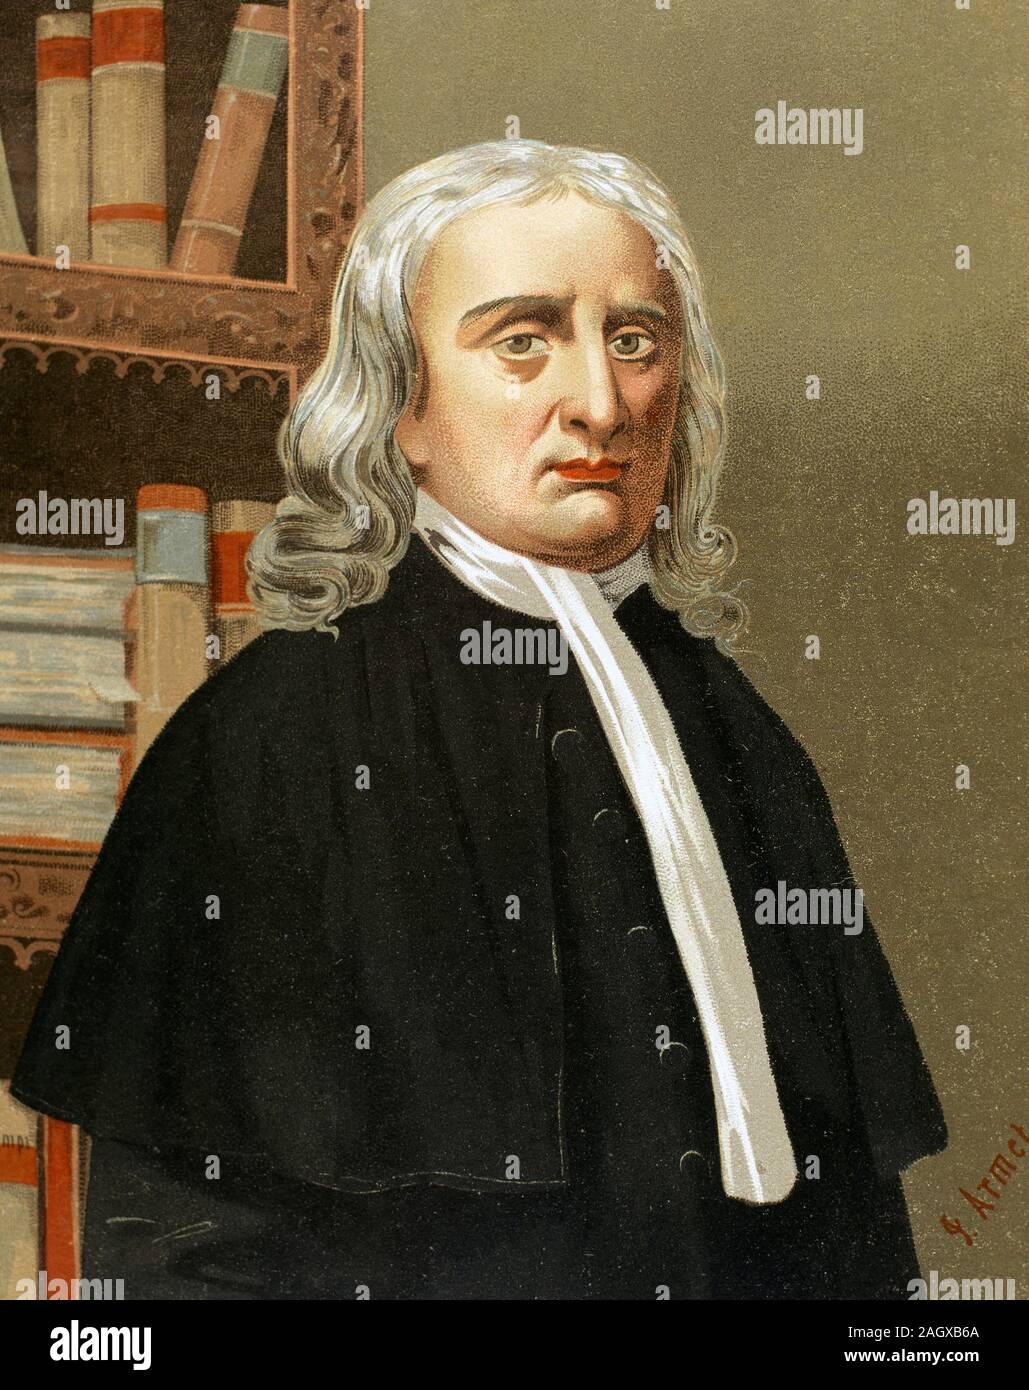 Isaac Newton (1642-1726/1727). Englischer Mathematiker, Astronom und Physiker. Chromolithography, 1876. Stockfoto